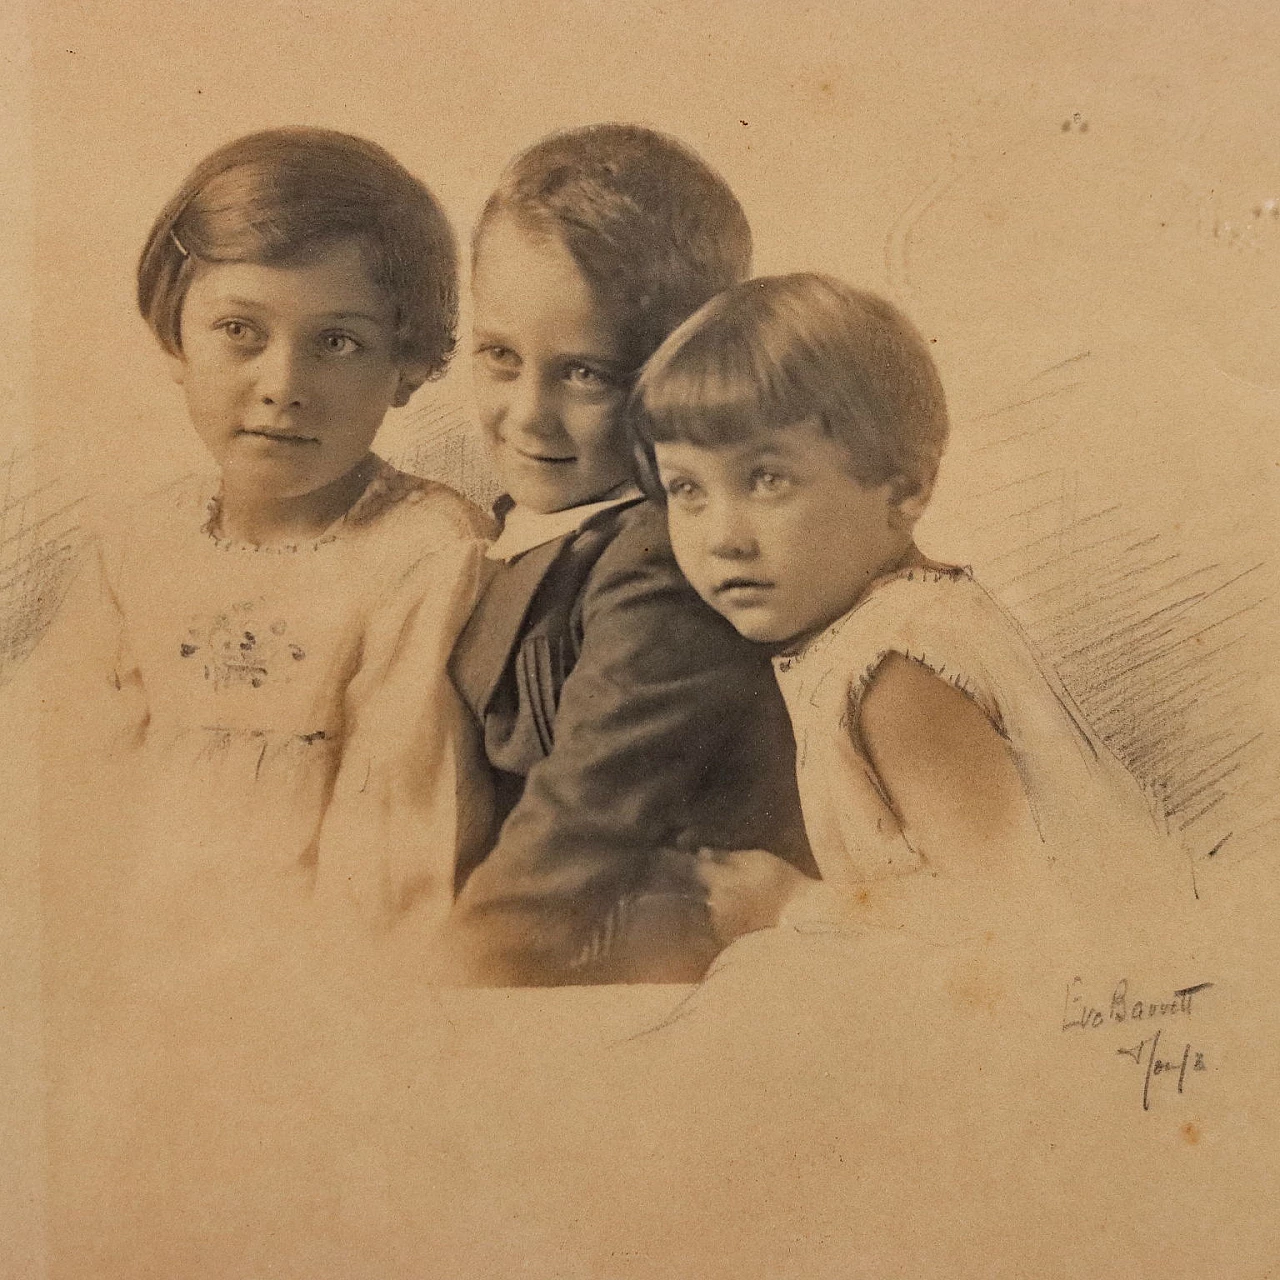 Eva Barrett, 4 ritratti di bambini, fotografie, 1930 3